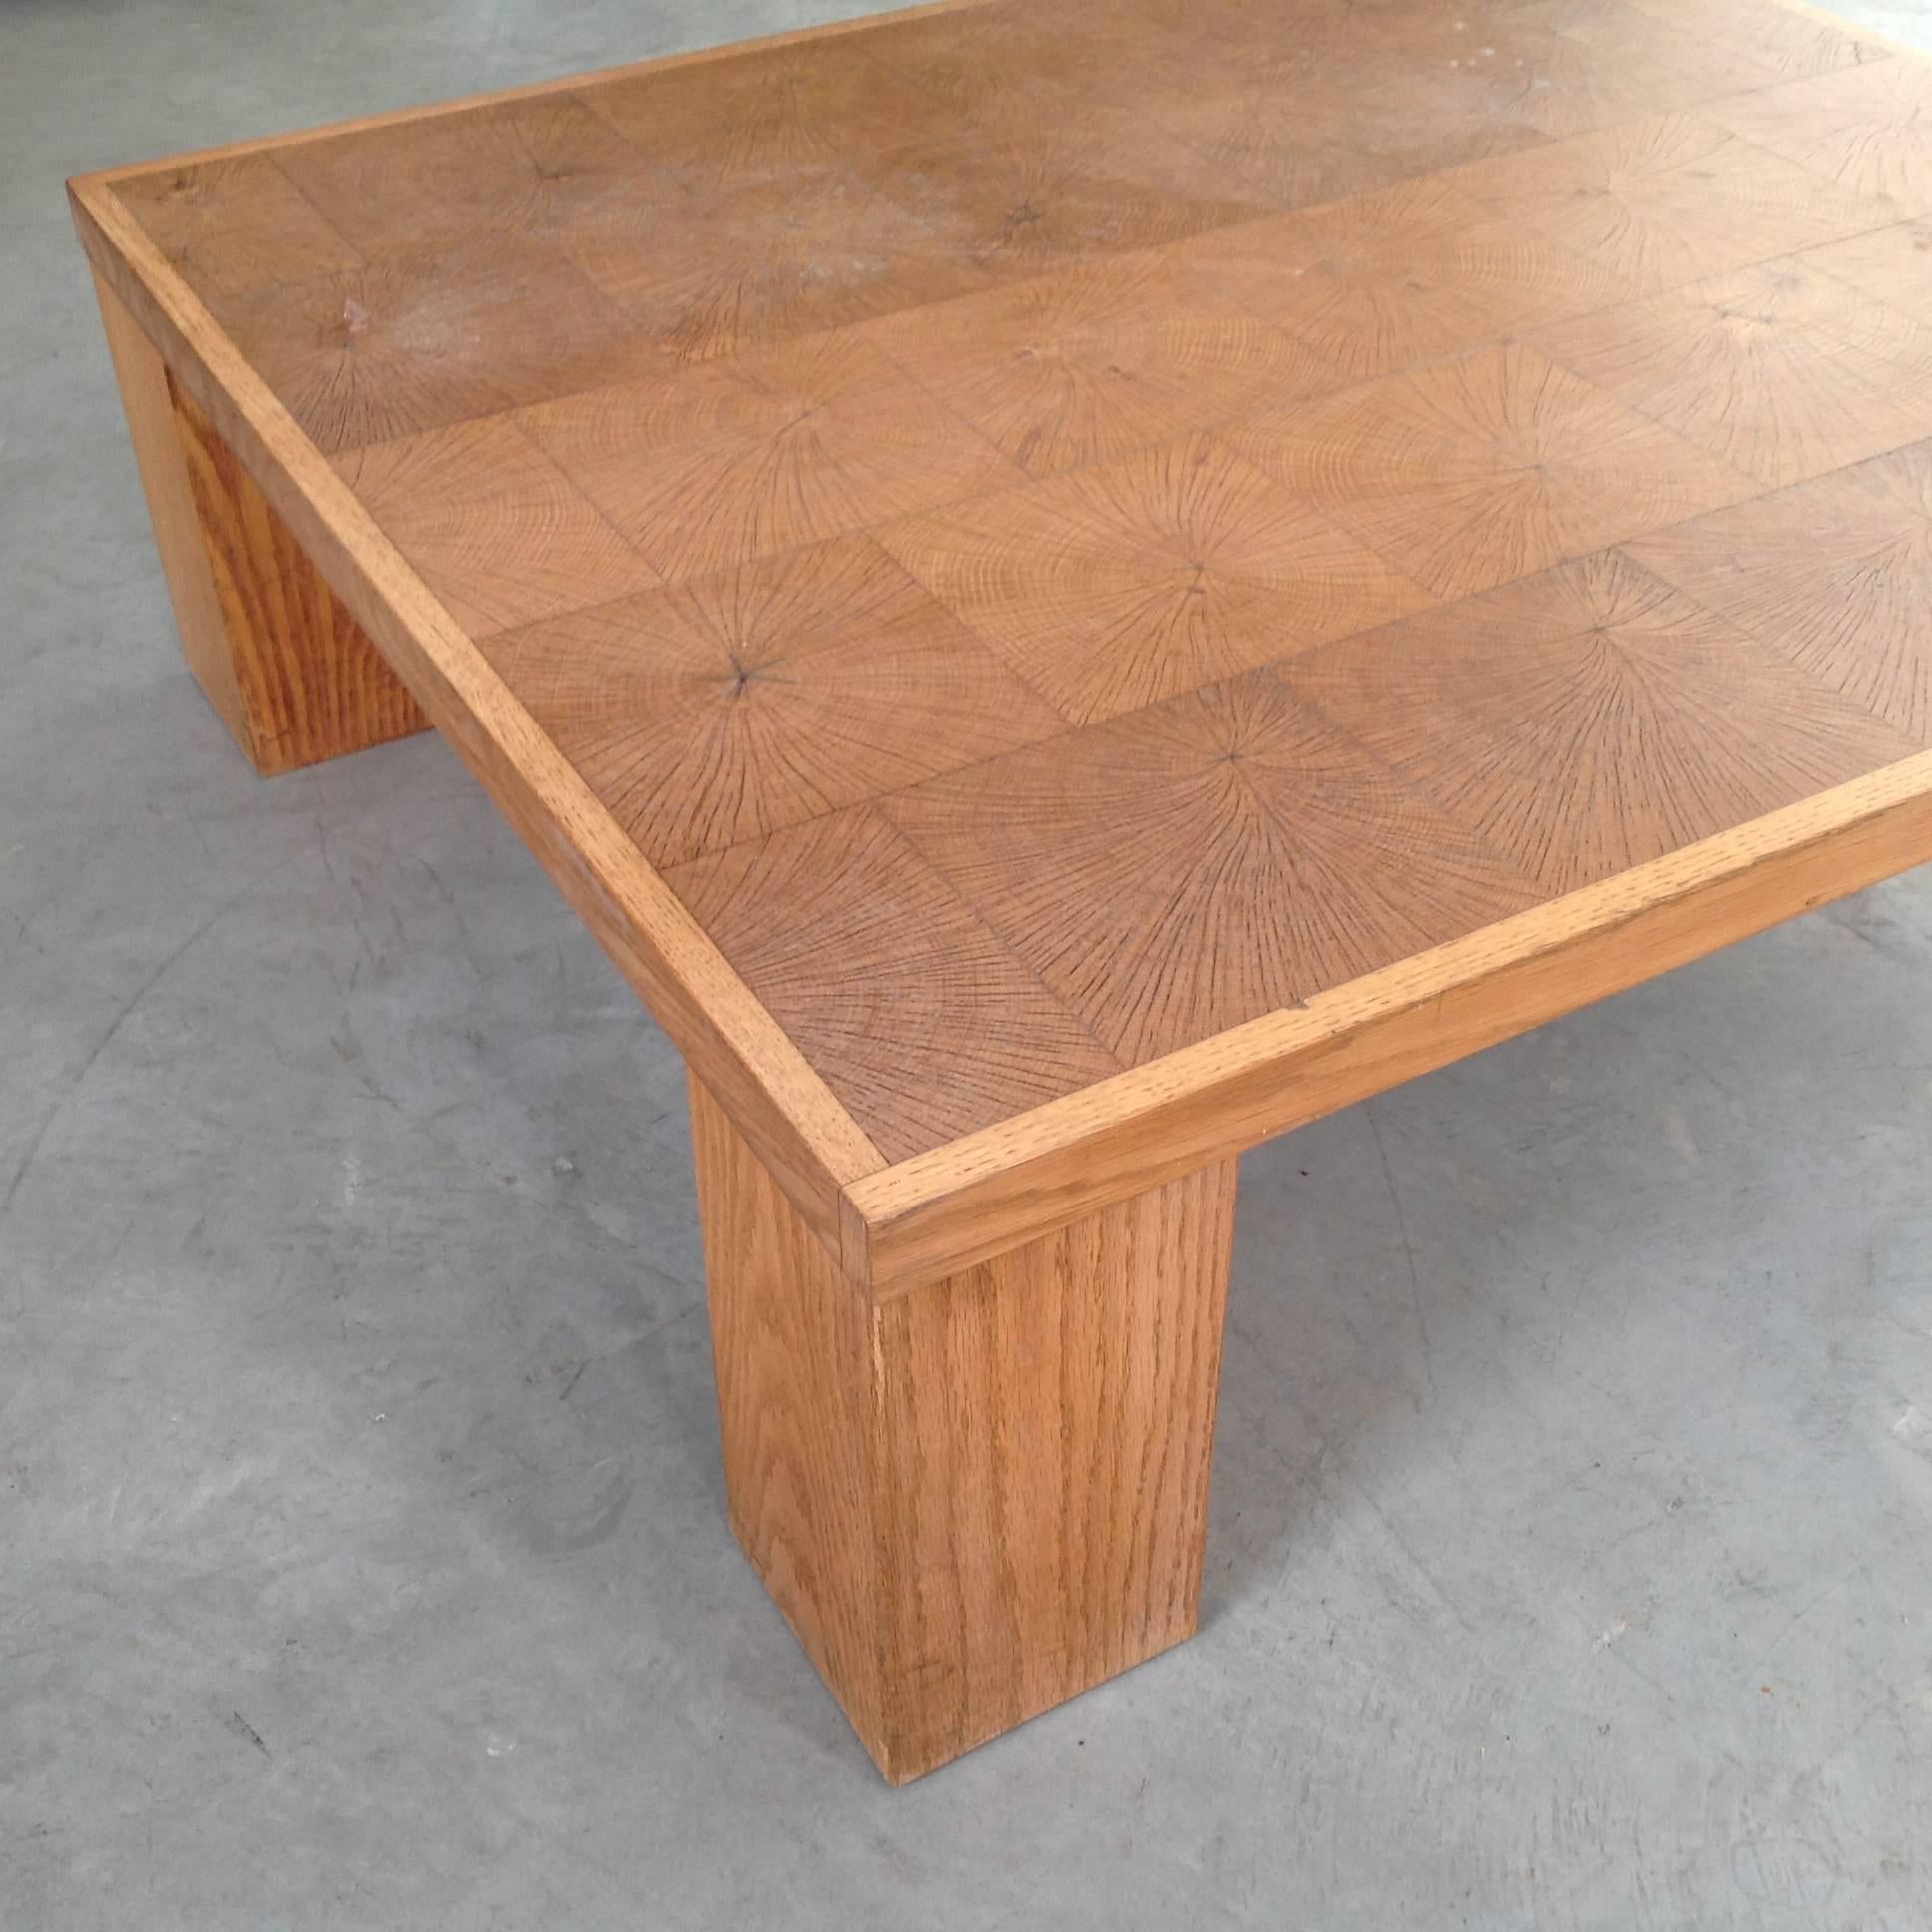 Elegant Coffee Table in Solid Oak Block Wood by Emiel Veranneman, Anno, 1969 For Sale 3